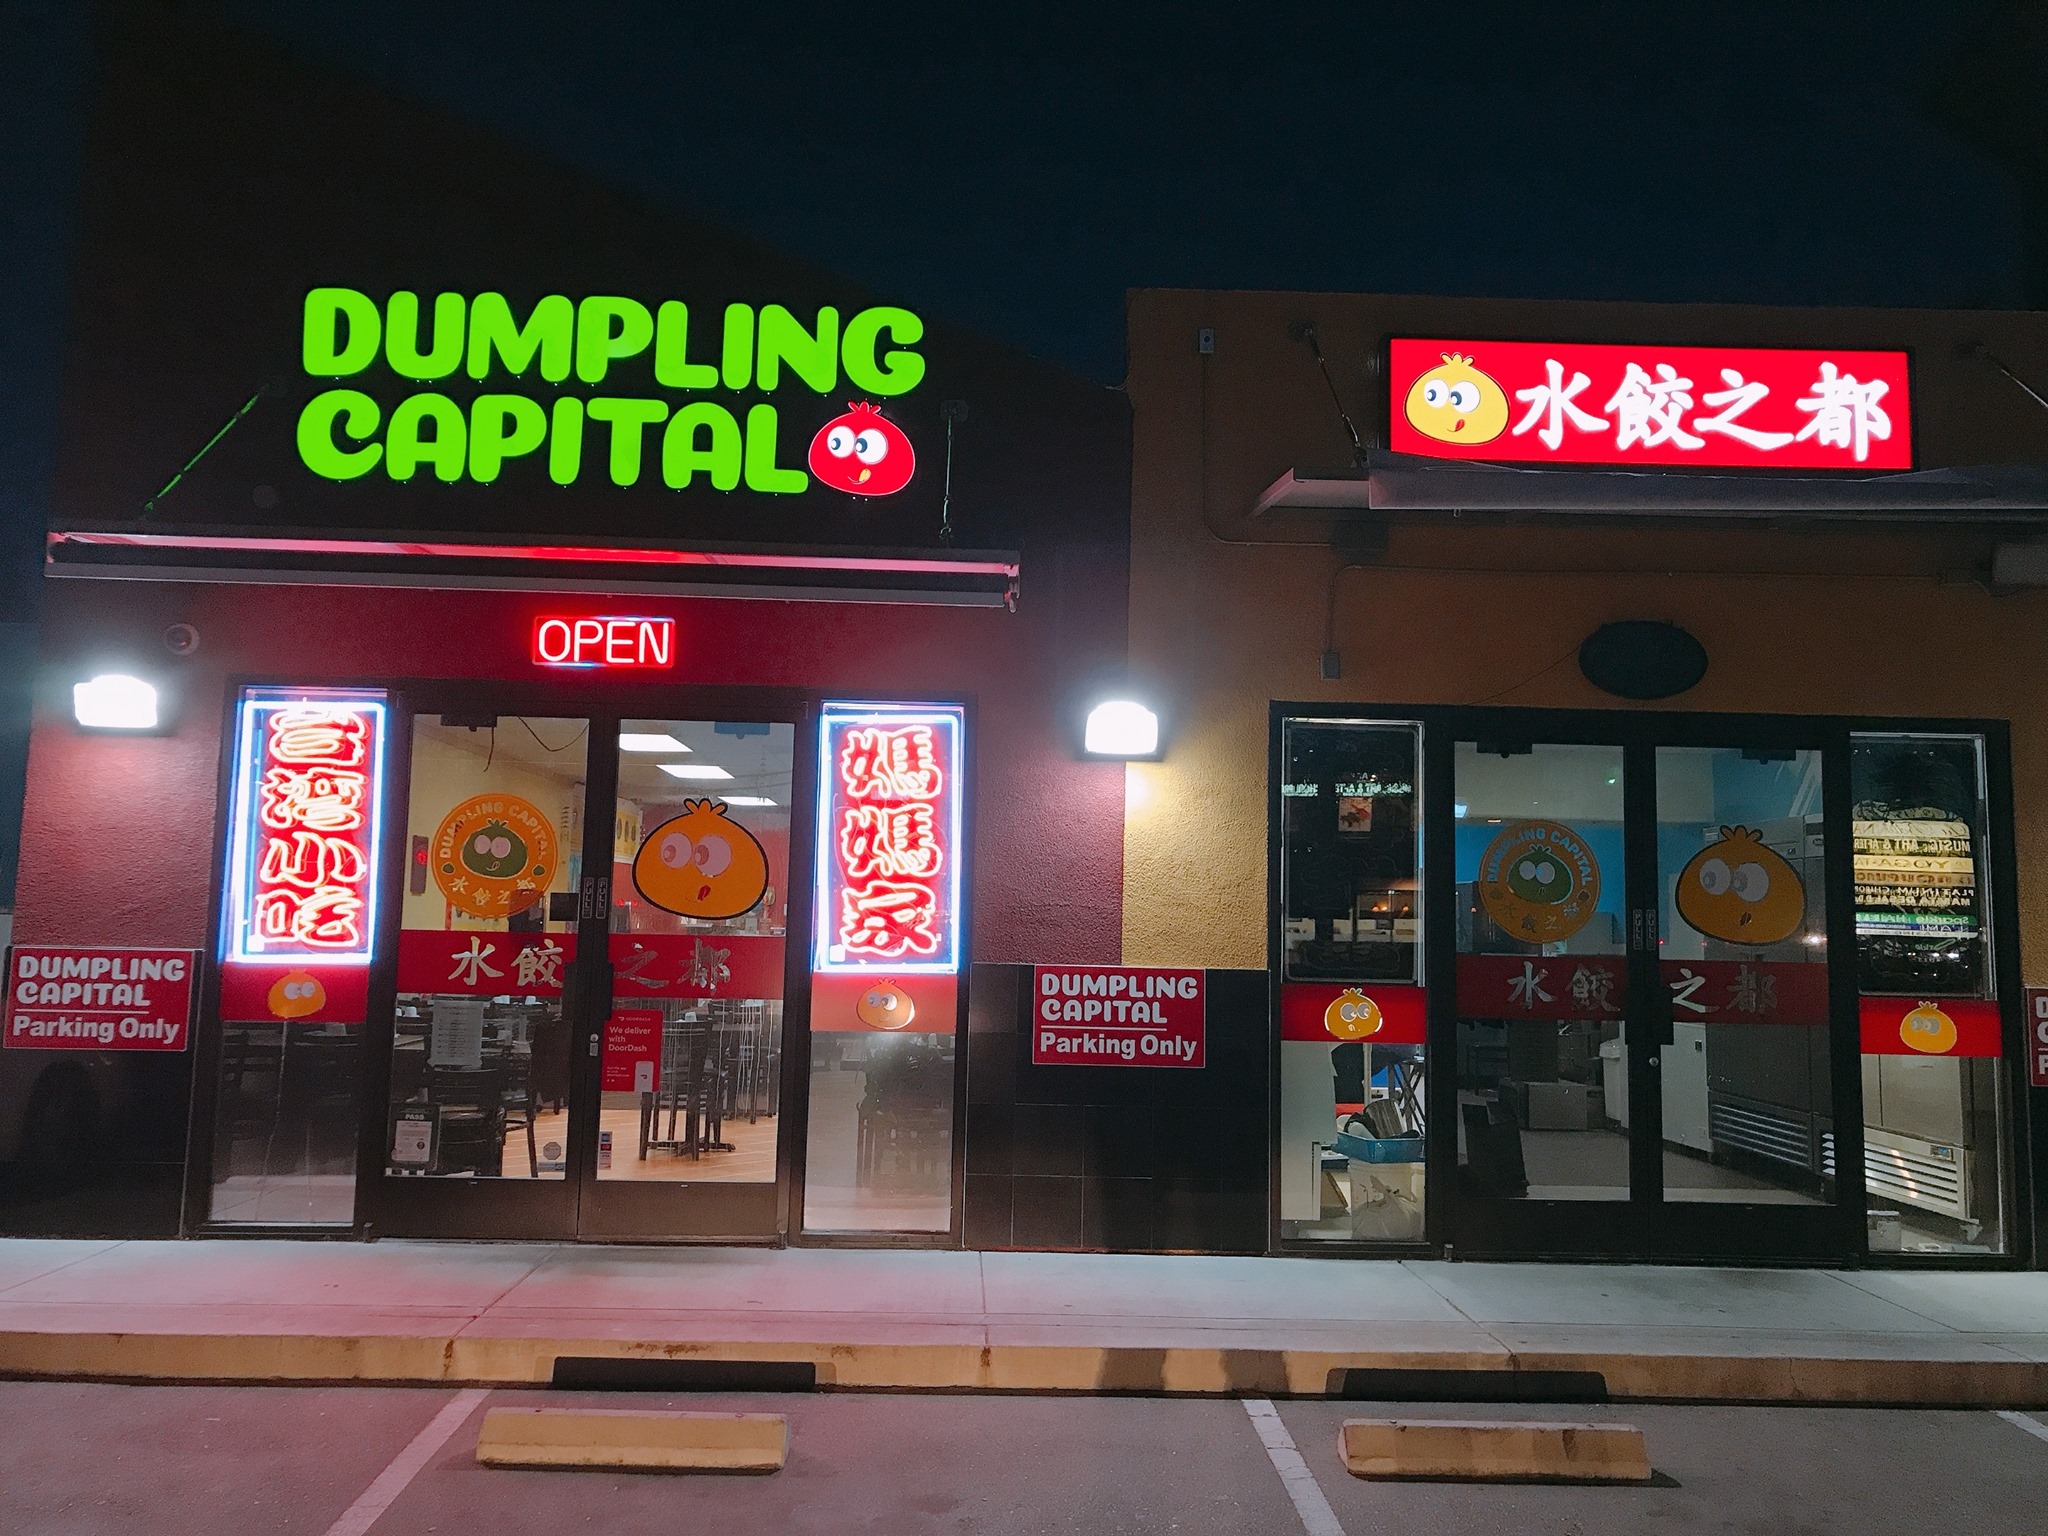 Dumpling Capital 水饺之都 -  Santa Clara